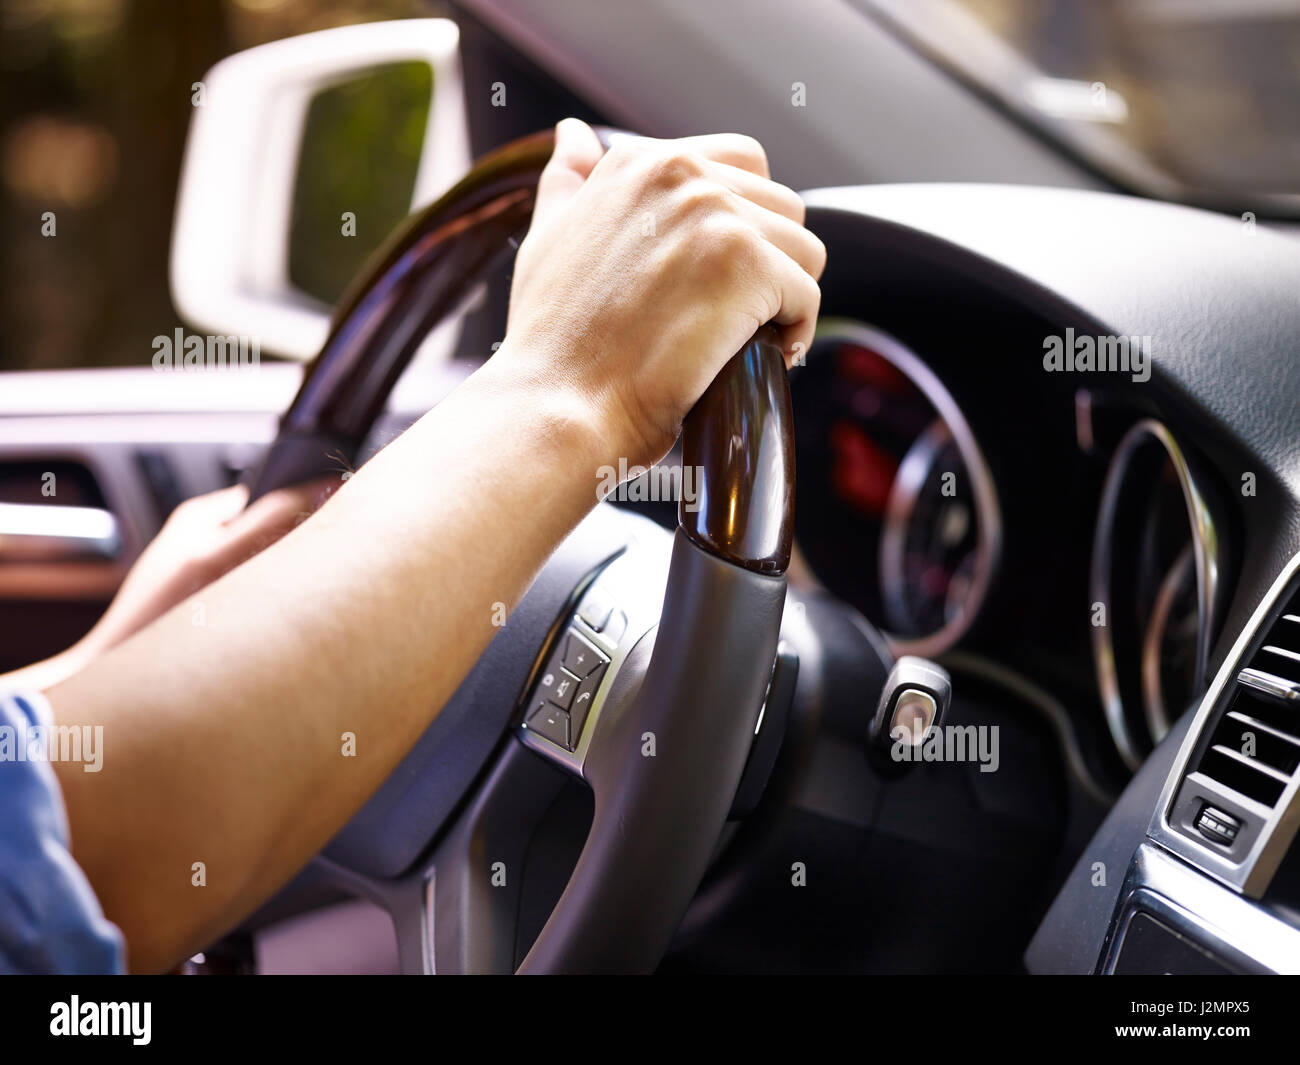 Le mani di un driver maschio trattenendo il volante di un veicolo, close-up. Foto Stock